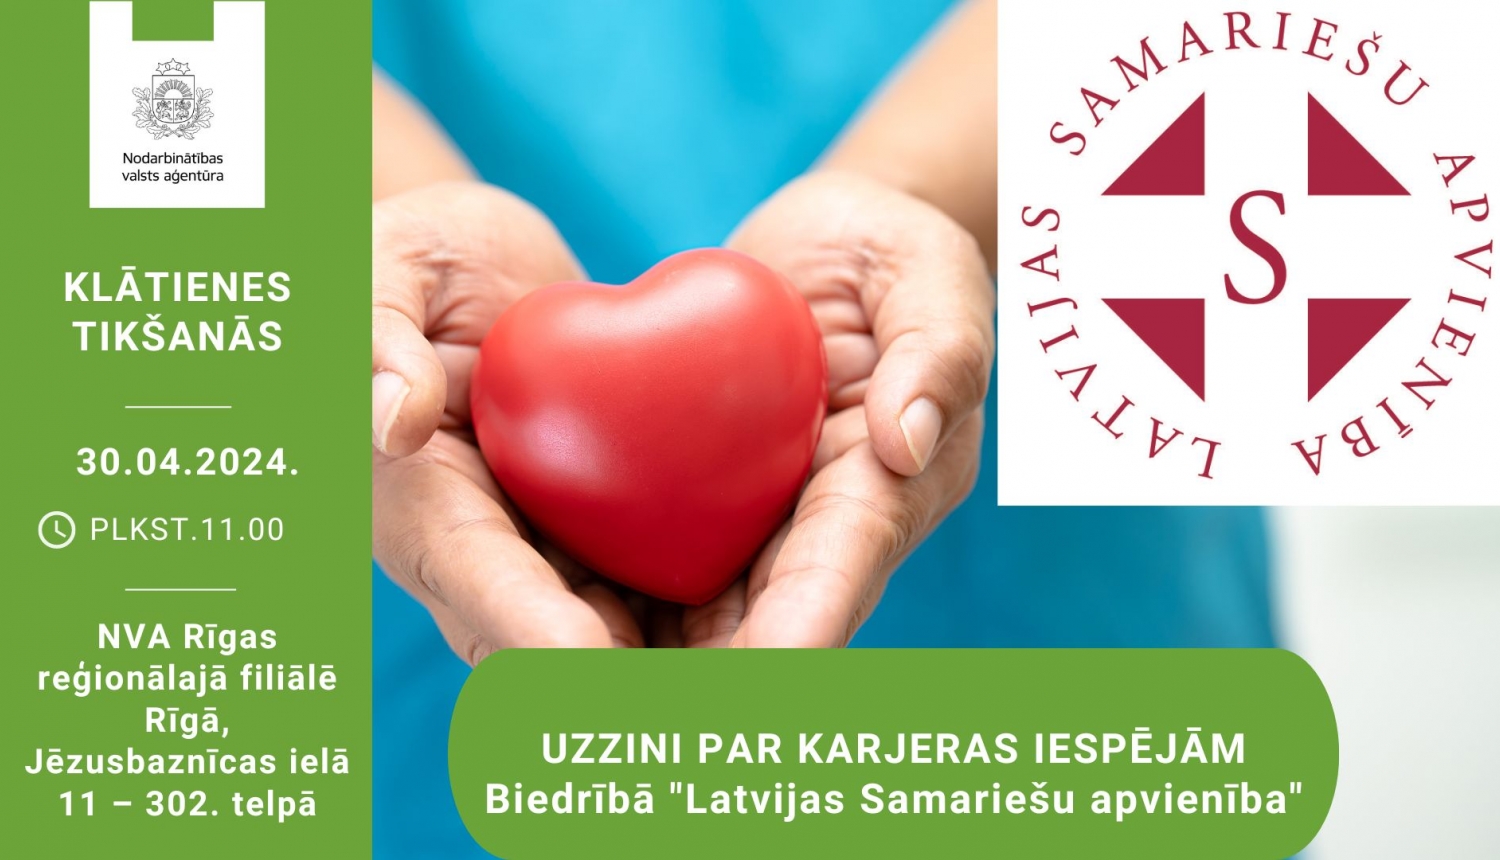 KLĀTIENES tikšanās RĪGĀ par karjeras iespējām biedrībā “Latvijas Samariešu apvienība”